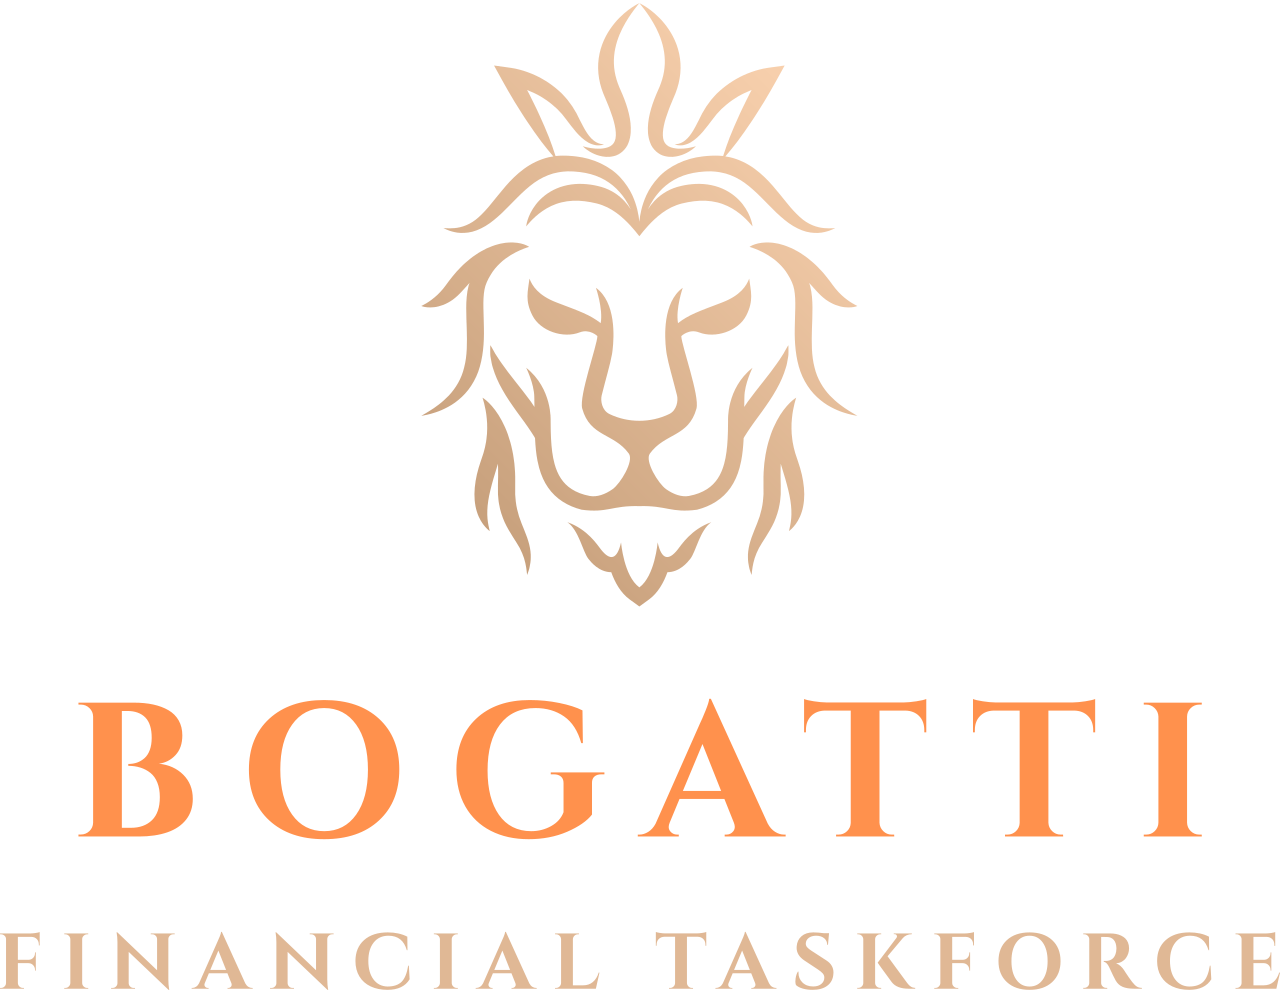 Bogatti's web page